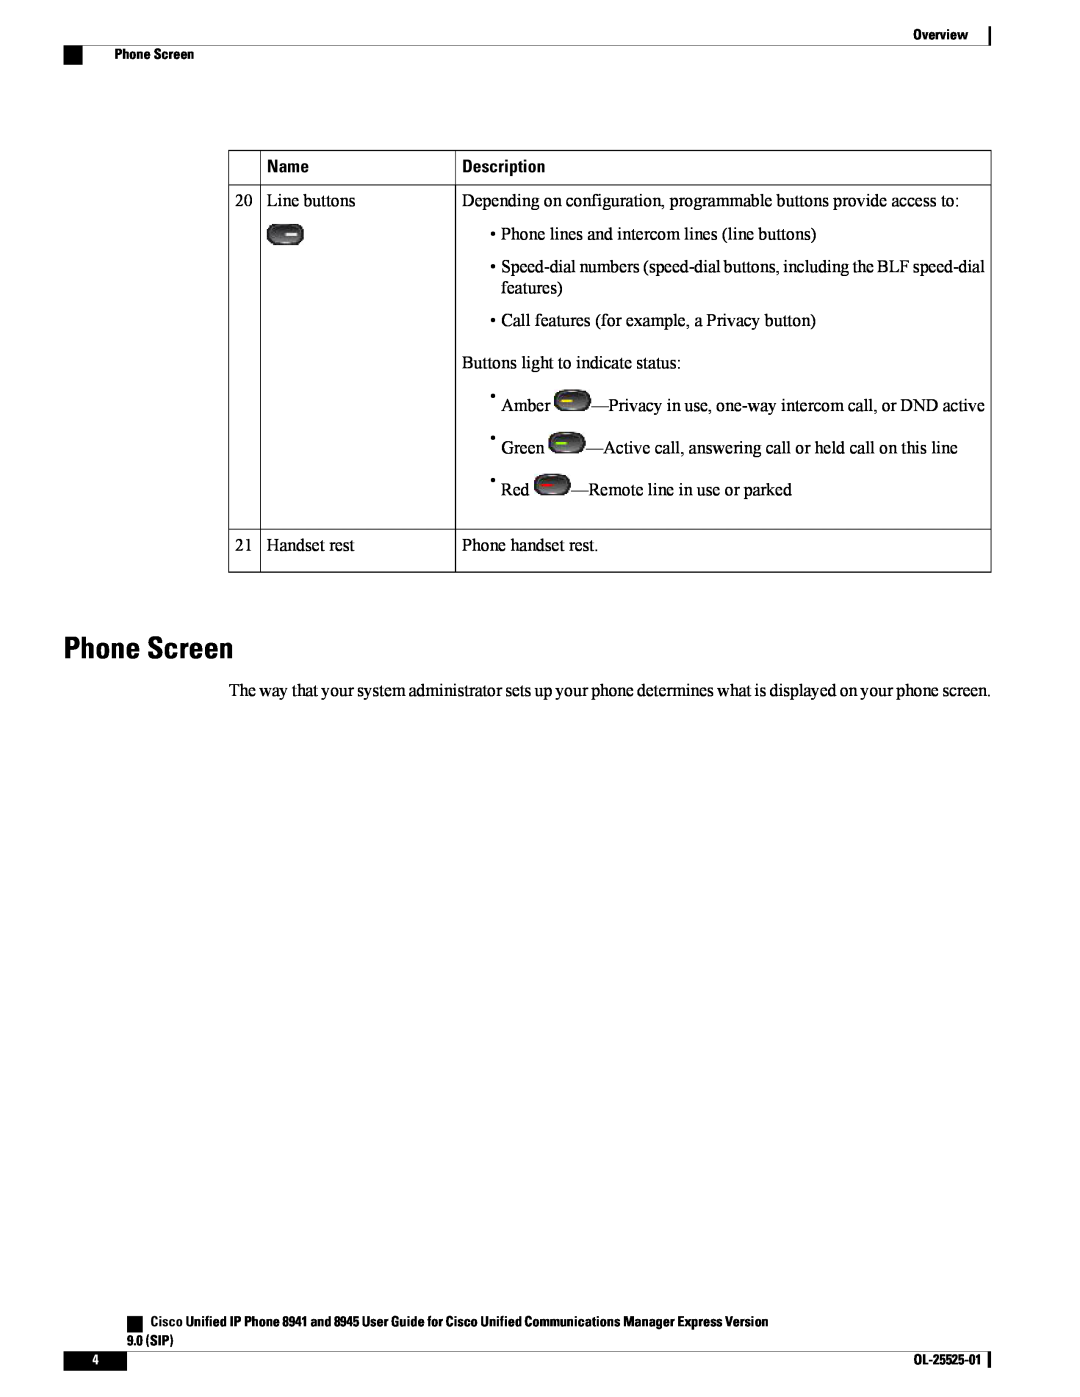 Cisco Systems 8941, 8945 manual Phone Screen, Name, Description 